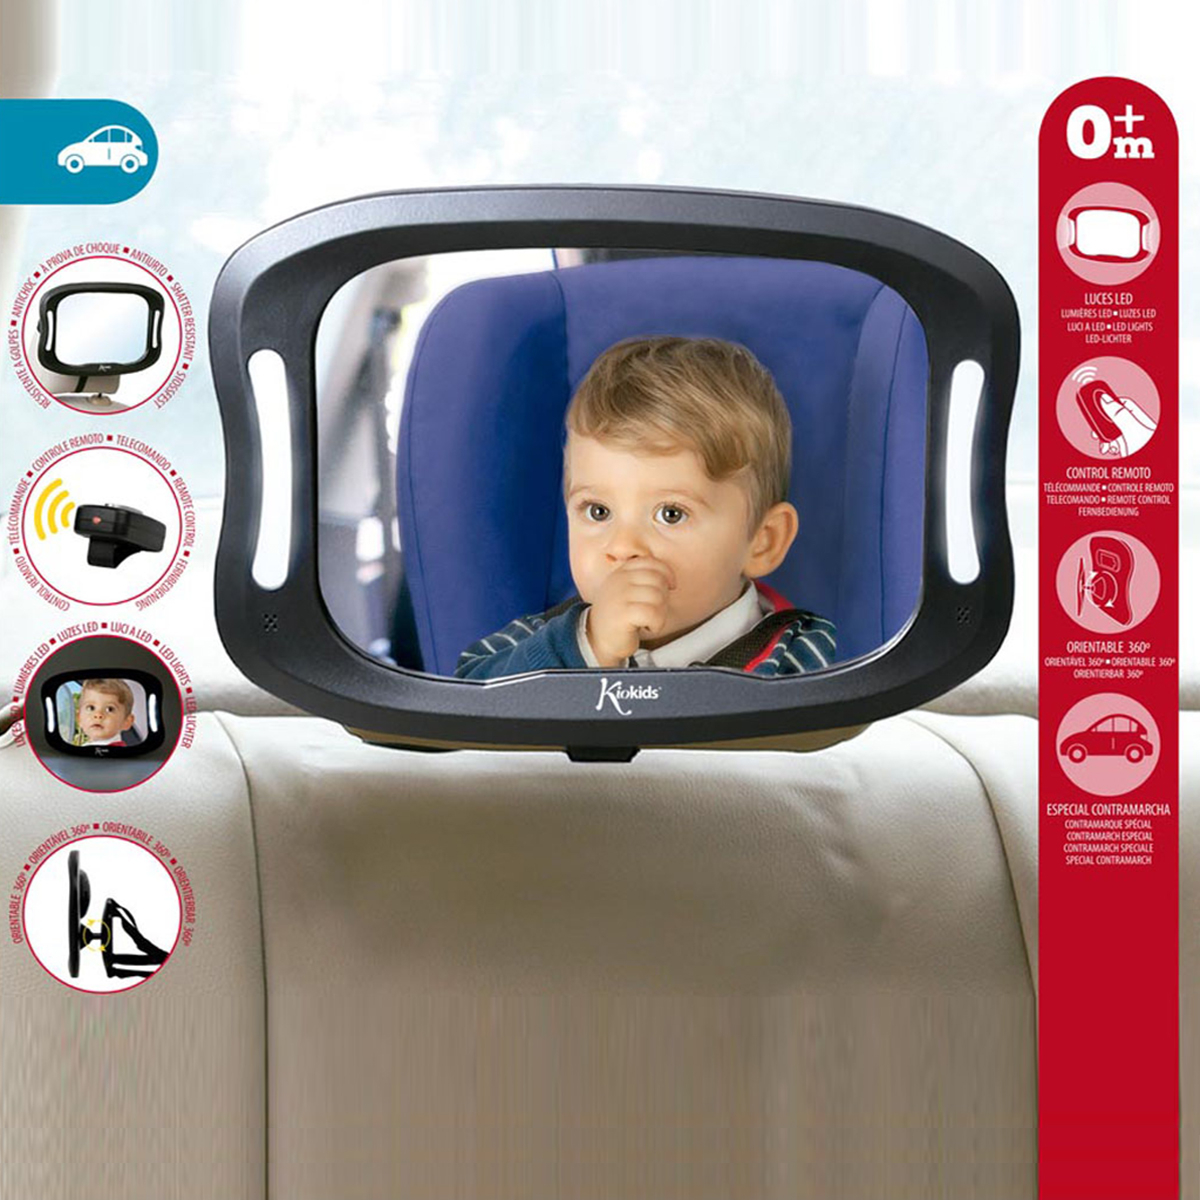 Καθρέφτης Αυτοκινήτου Για Μωρά Με Φως & Χειριστήριο Kiokids 2508 177660